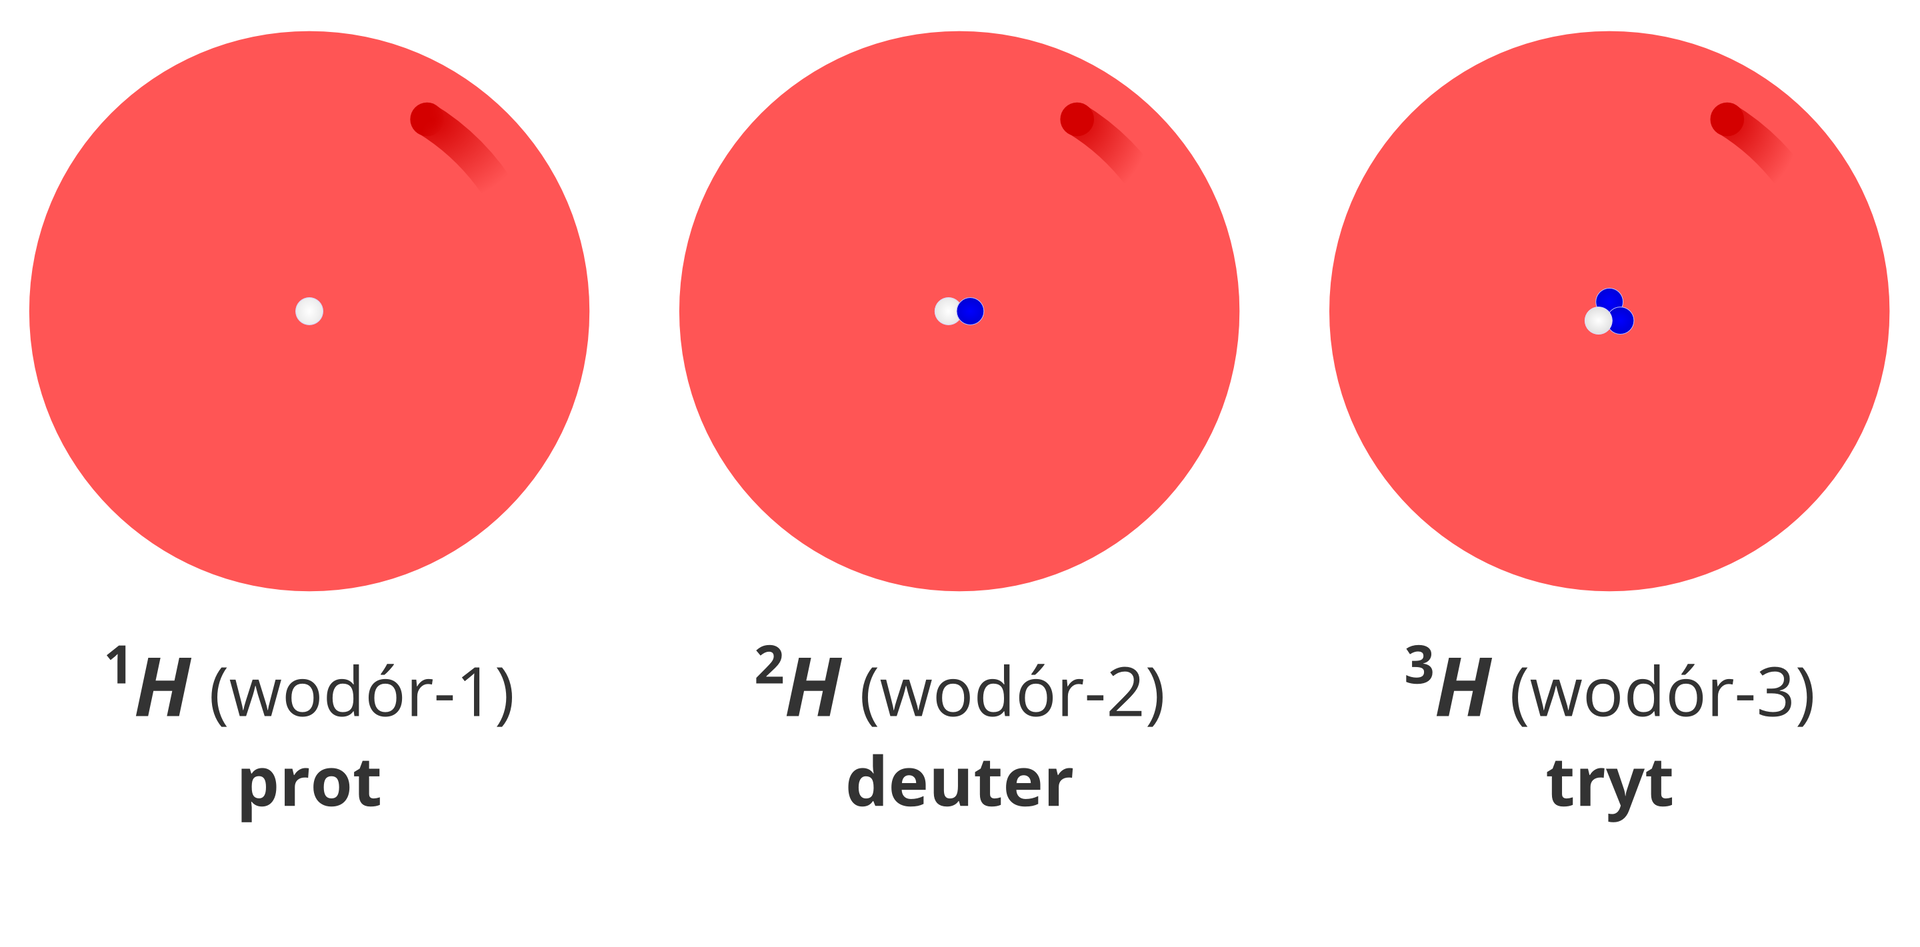 Ilustracja przedstawia uproszczone modele budowy trzech izotopów wodoru: protu, deuteru i trytu. Przedstawiające je rysunki mają postać dużych czerwonych kół symbolizujących powłokę elektronową z jedną rozmytą ciemniejszą plamą oznaczającą elektron. W samym środku tych kół znajdują się jądra atomów. Pierwszy od lewej z prezentowanych atomów to wodór-1, czyli prot. W jądrze jego modelu znajduje się białe koło symbolizujące proton. Drugi, środkowy z prezentowanych atomów to wodór-2, czyli deuter. W jądrze jego modelu znajduje się białe koło symbolizujące proton oraz niebieskie koło symbolizujące neutron. Trzeci z prezentowanych atomów znajdujący się po prawej stronie ilustracji to wodór-3, zwany też trytem. W jądrze jego modelu znajduje się białe koło symbolizujące proton oraz dwa niebieskie koła symbolizujące neutrony.